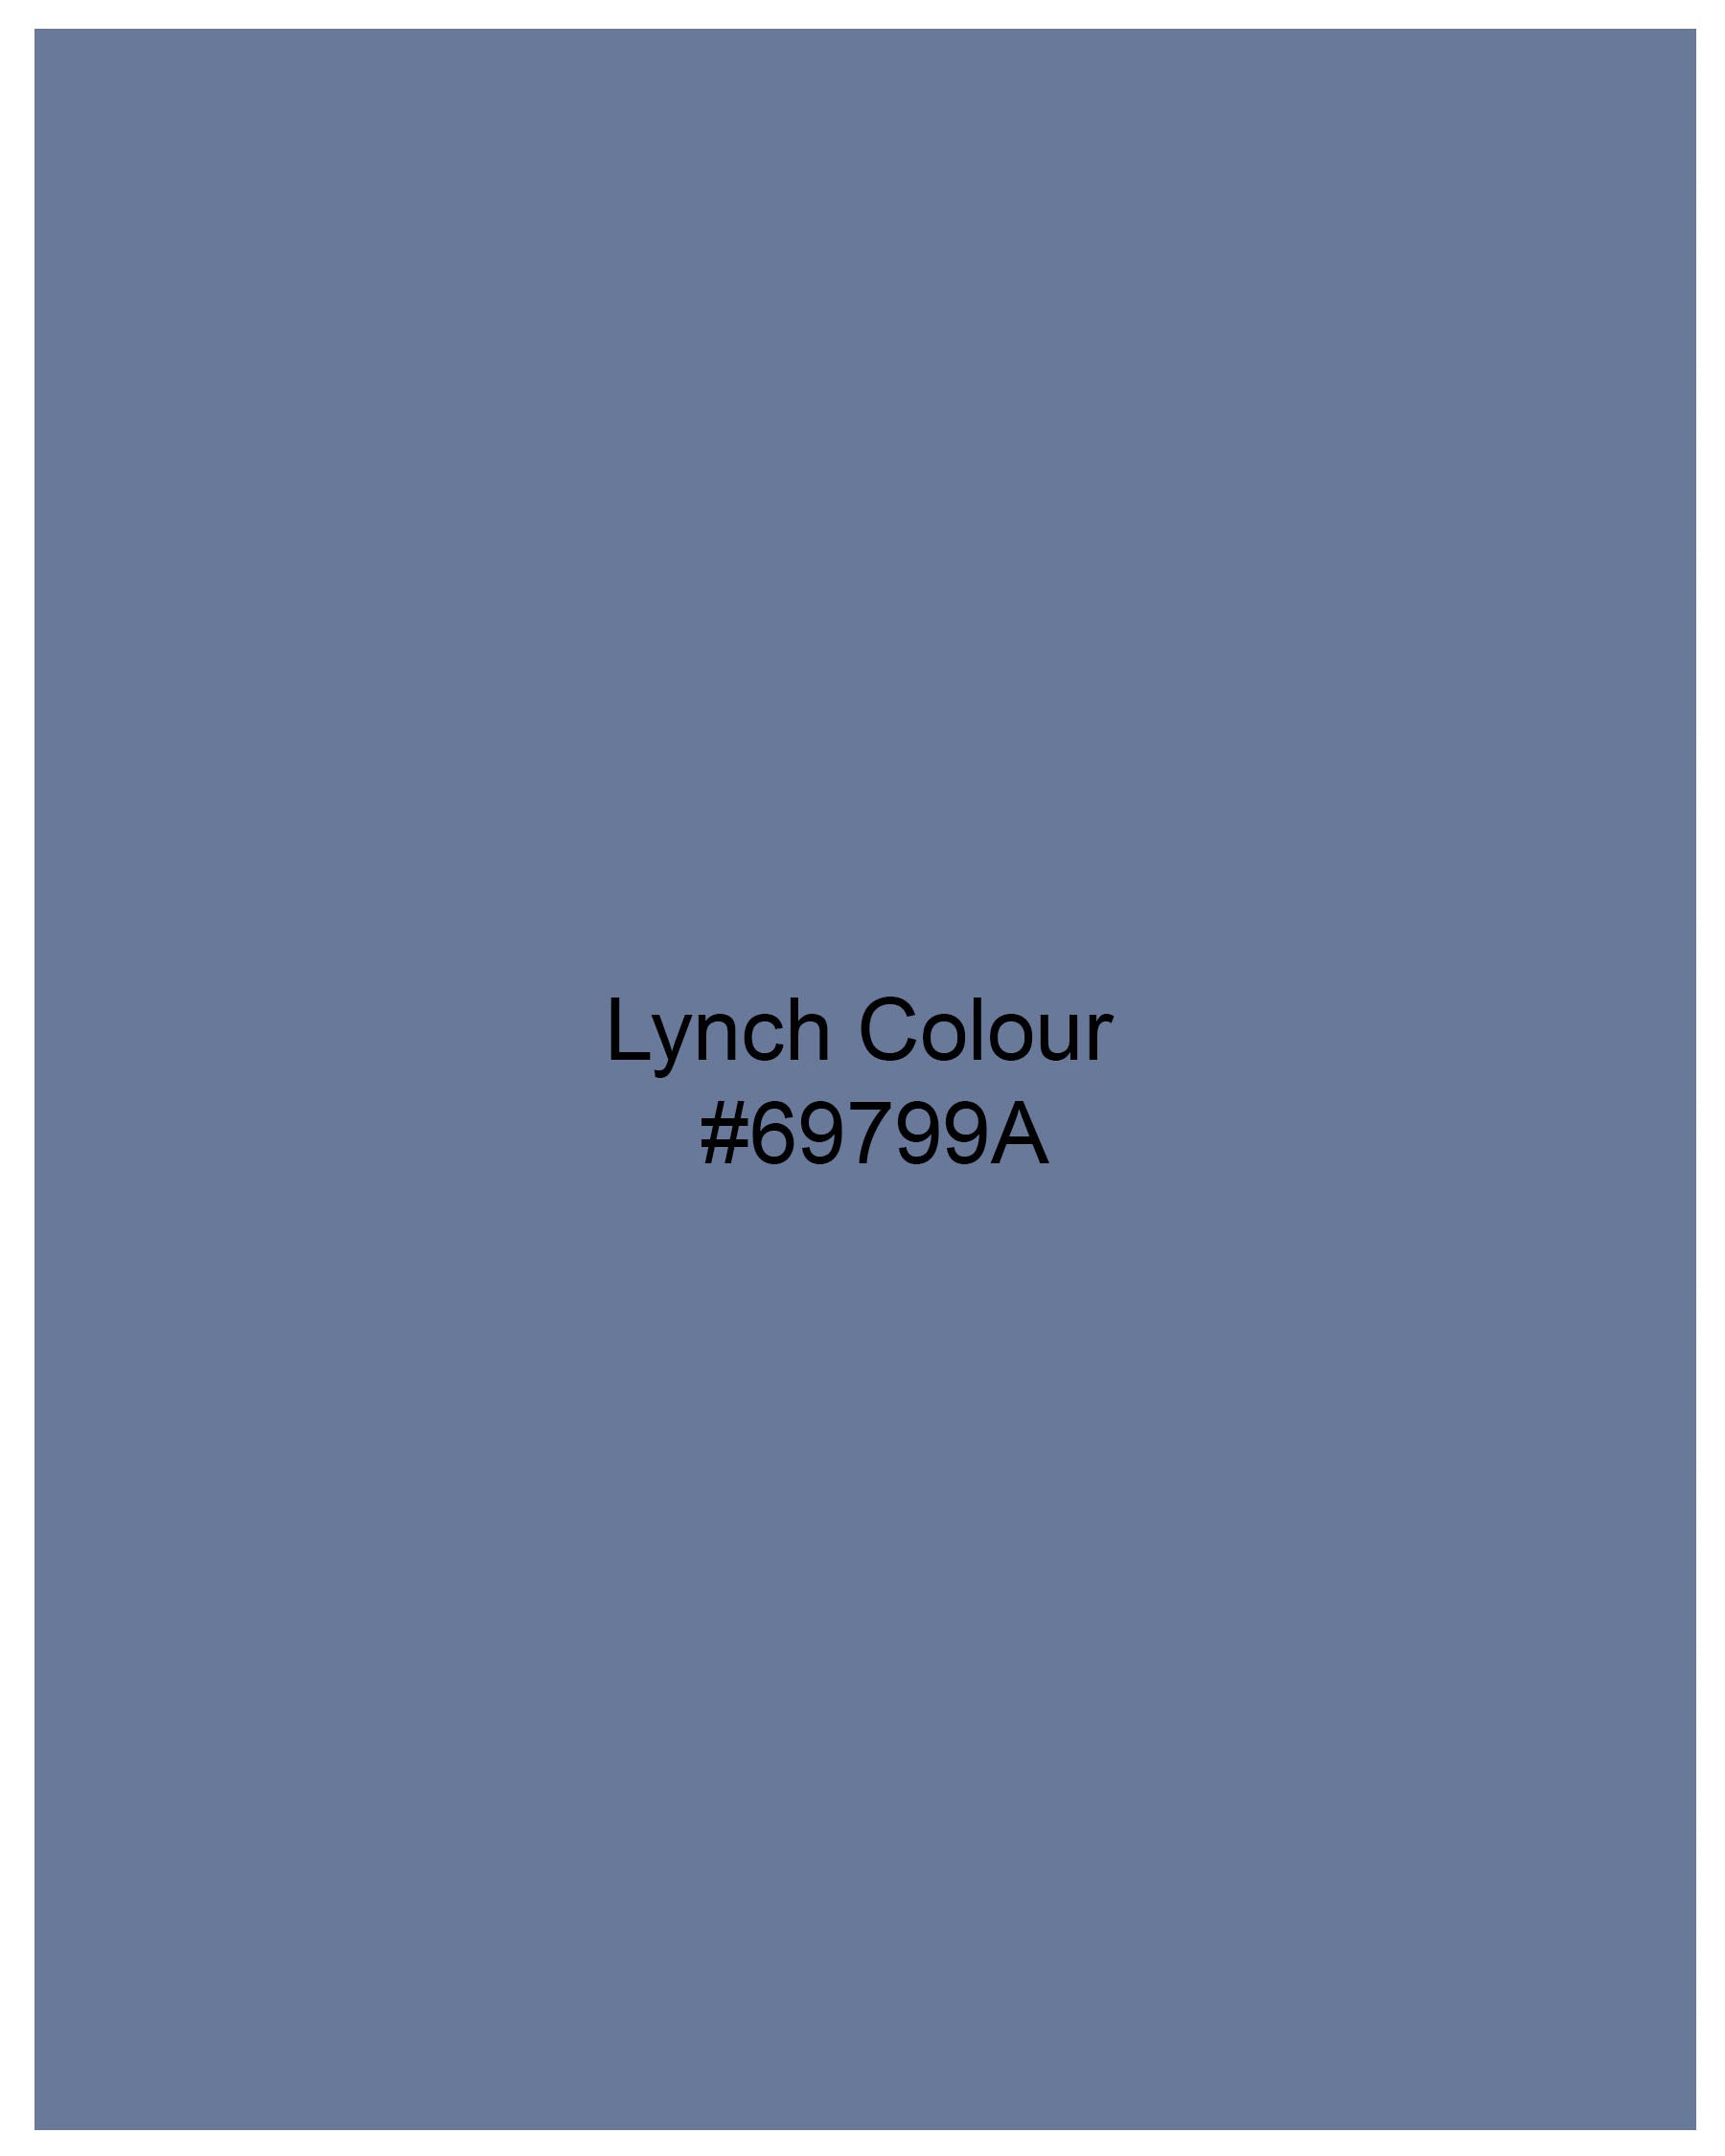 Lynch Blue Luxurious Linen Shirt 7883-BD-38, 7883-BD-H-38, 7883-BD-39, 7883-BD-H-39, 7883-BD-40, 7883-BD-H-40, 7883-BD-42, 7883-BD-H-42, 7883-BD-44, 7883-BD-H-44, 7883-BD-46, 7883-BD-H-46, 7883-BD-48, 7883-BD-H-48, 7883-BD-50, 7883-BD-H-50, 7883-BD-52, 7883-BD-H-52